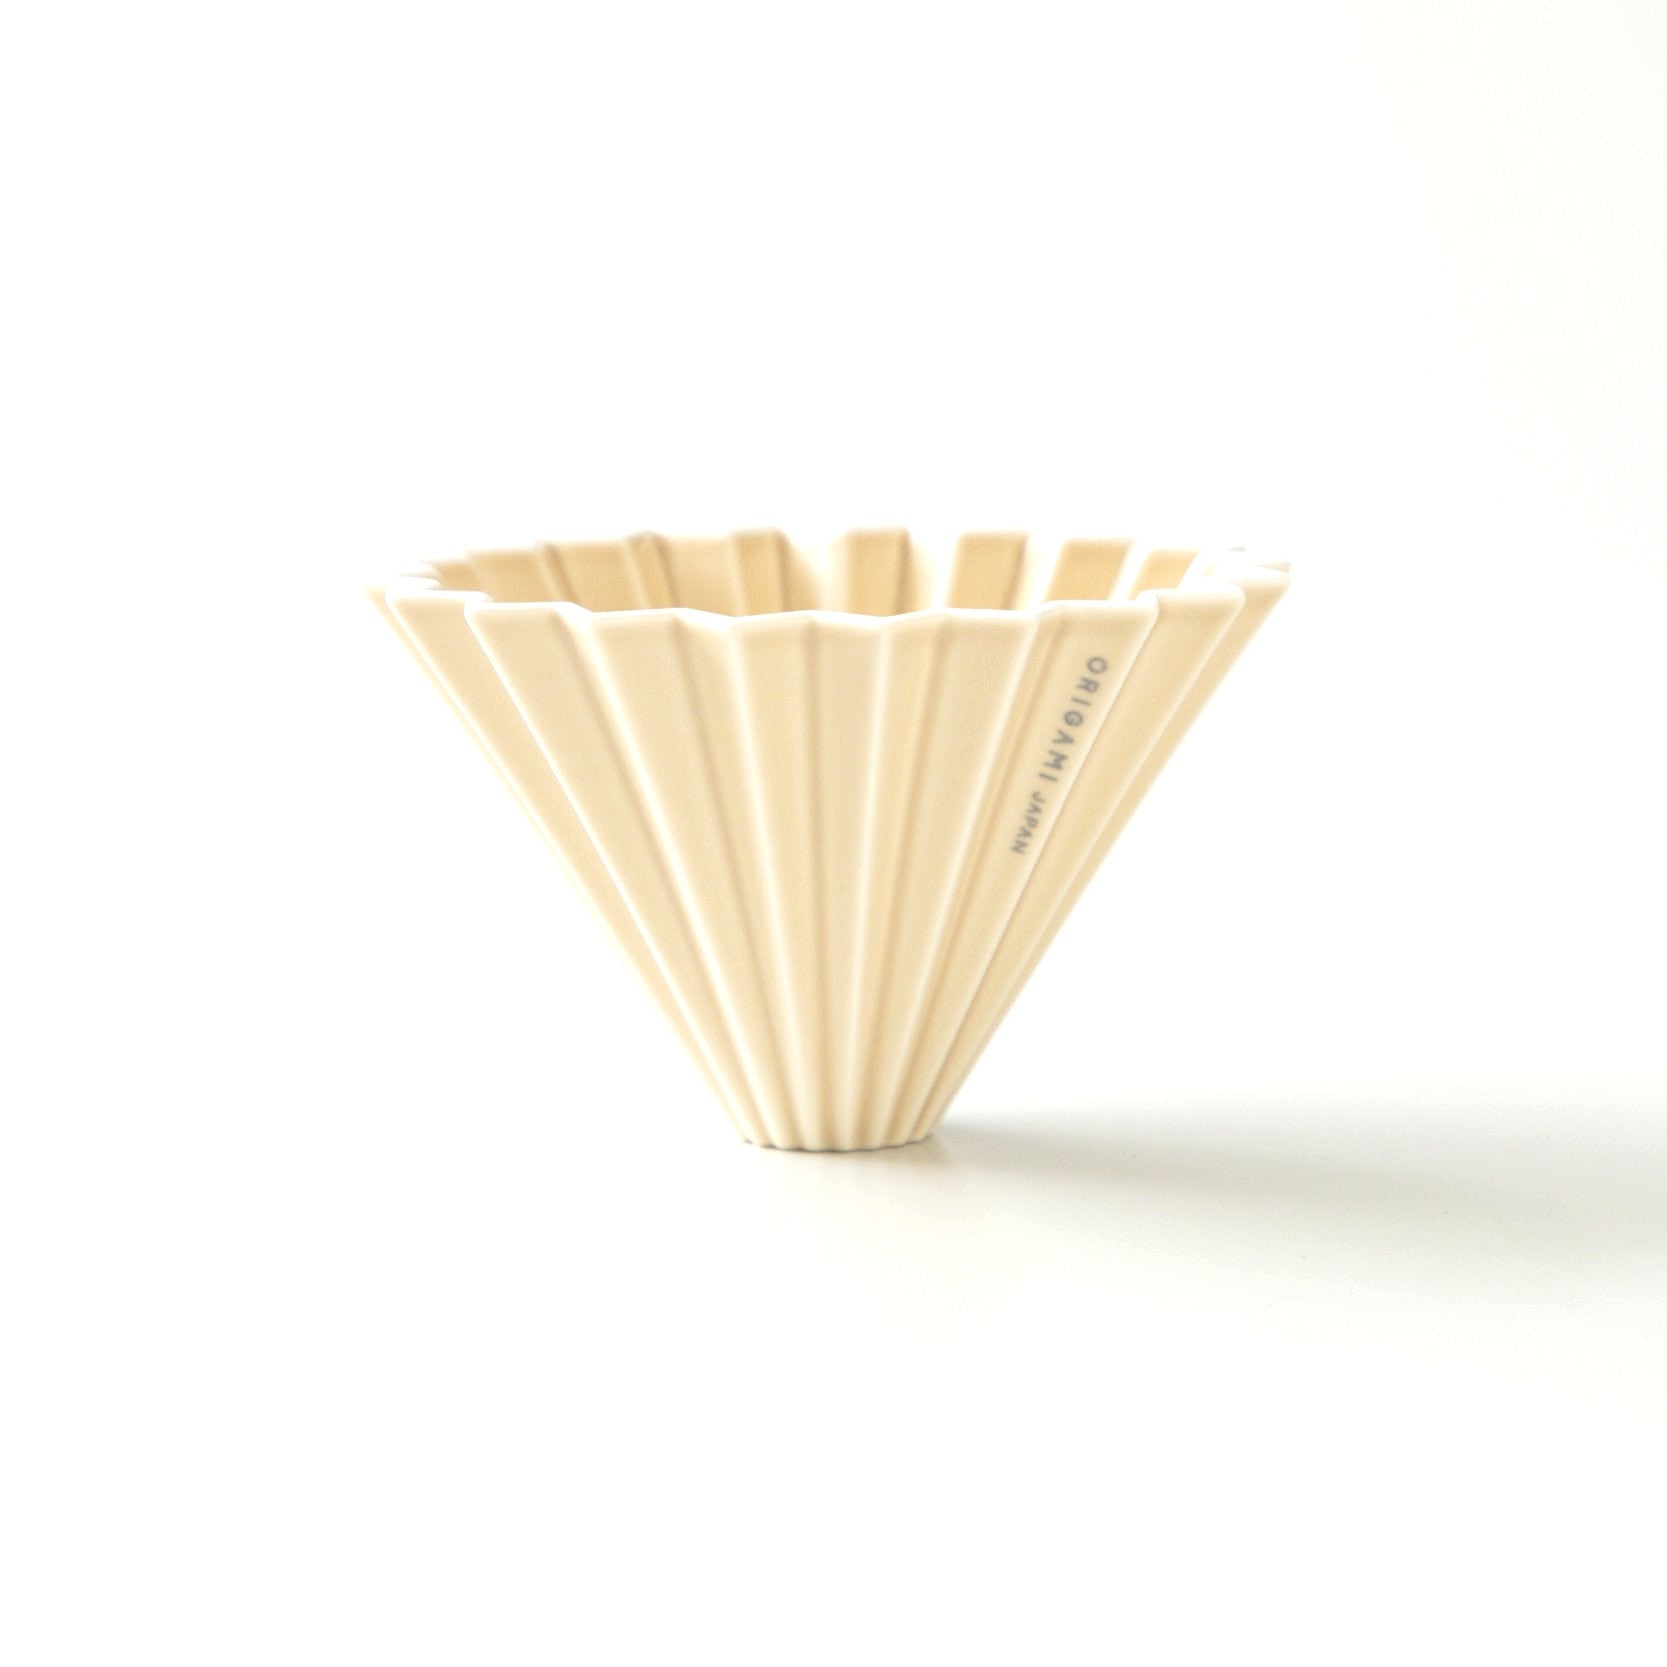 Origami medium ceramic dripper in matte beige